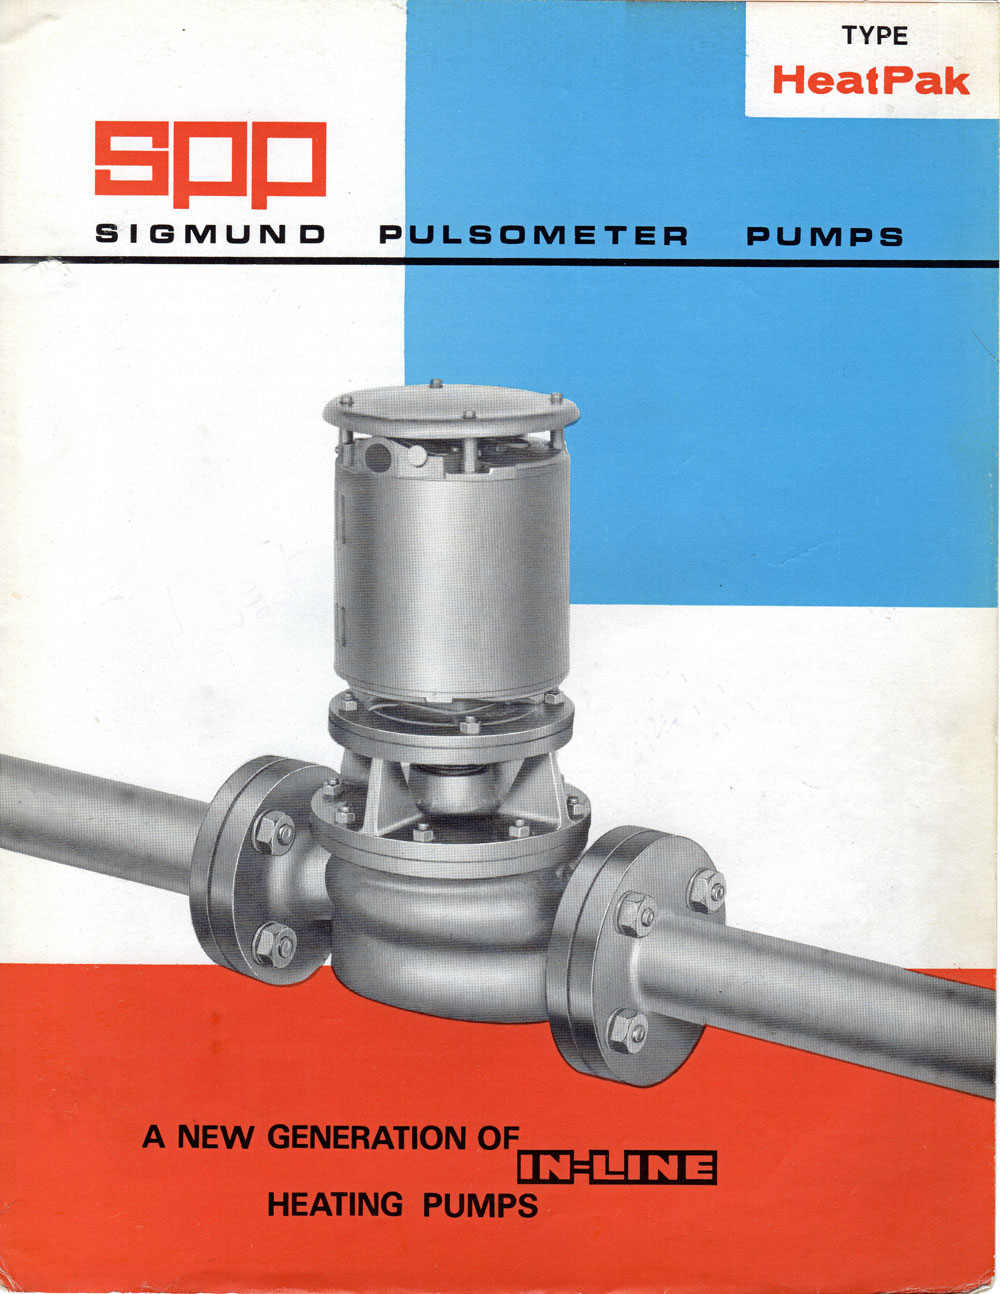 sigmund pulsometer pumps - heatpak in-line pumps